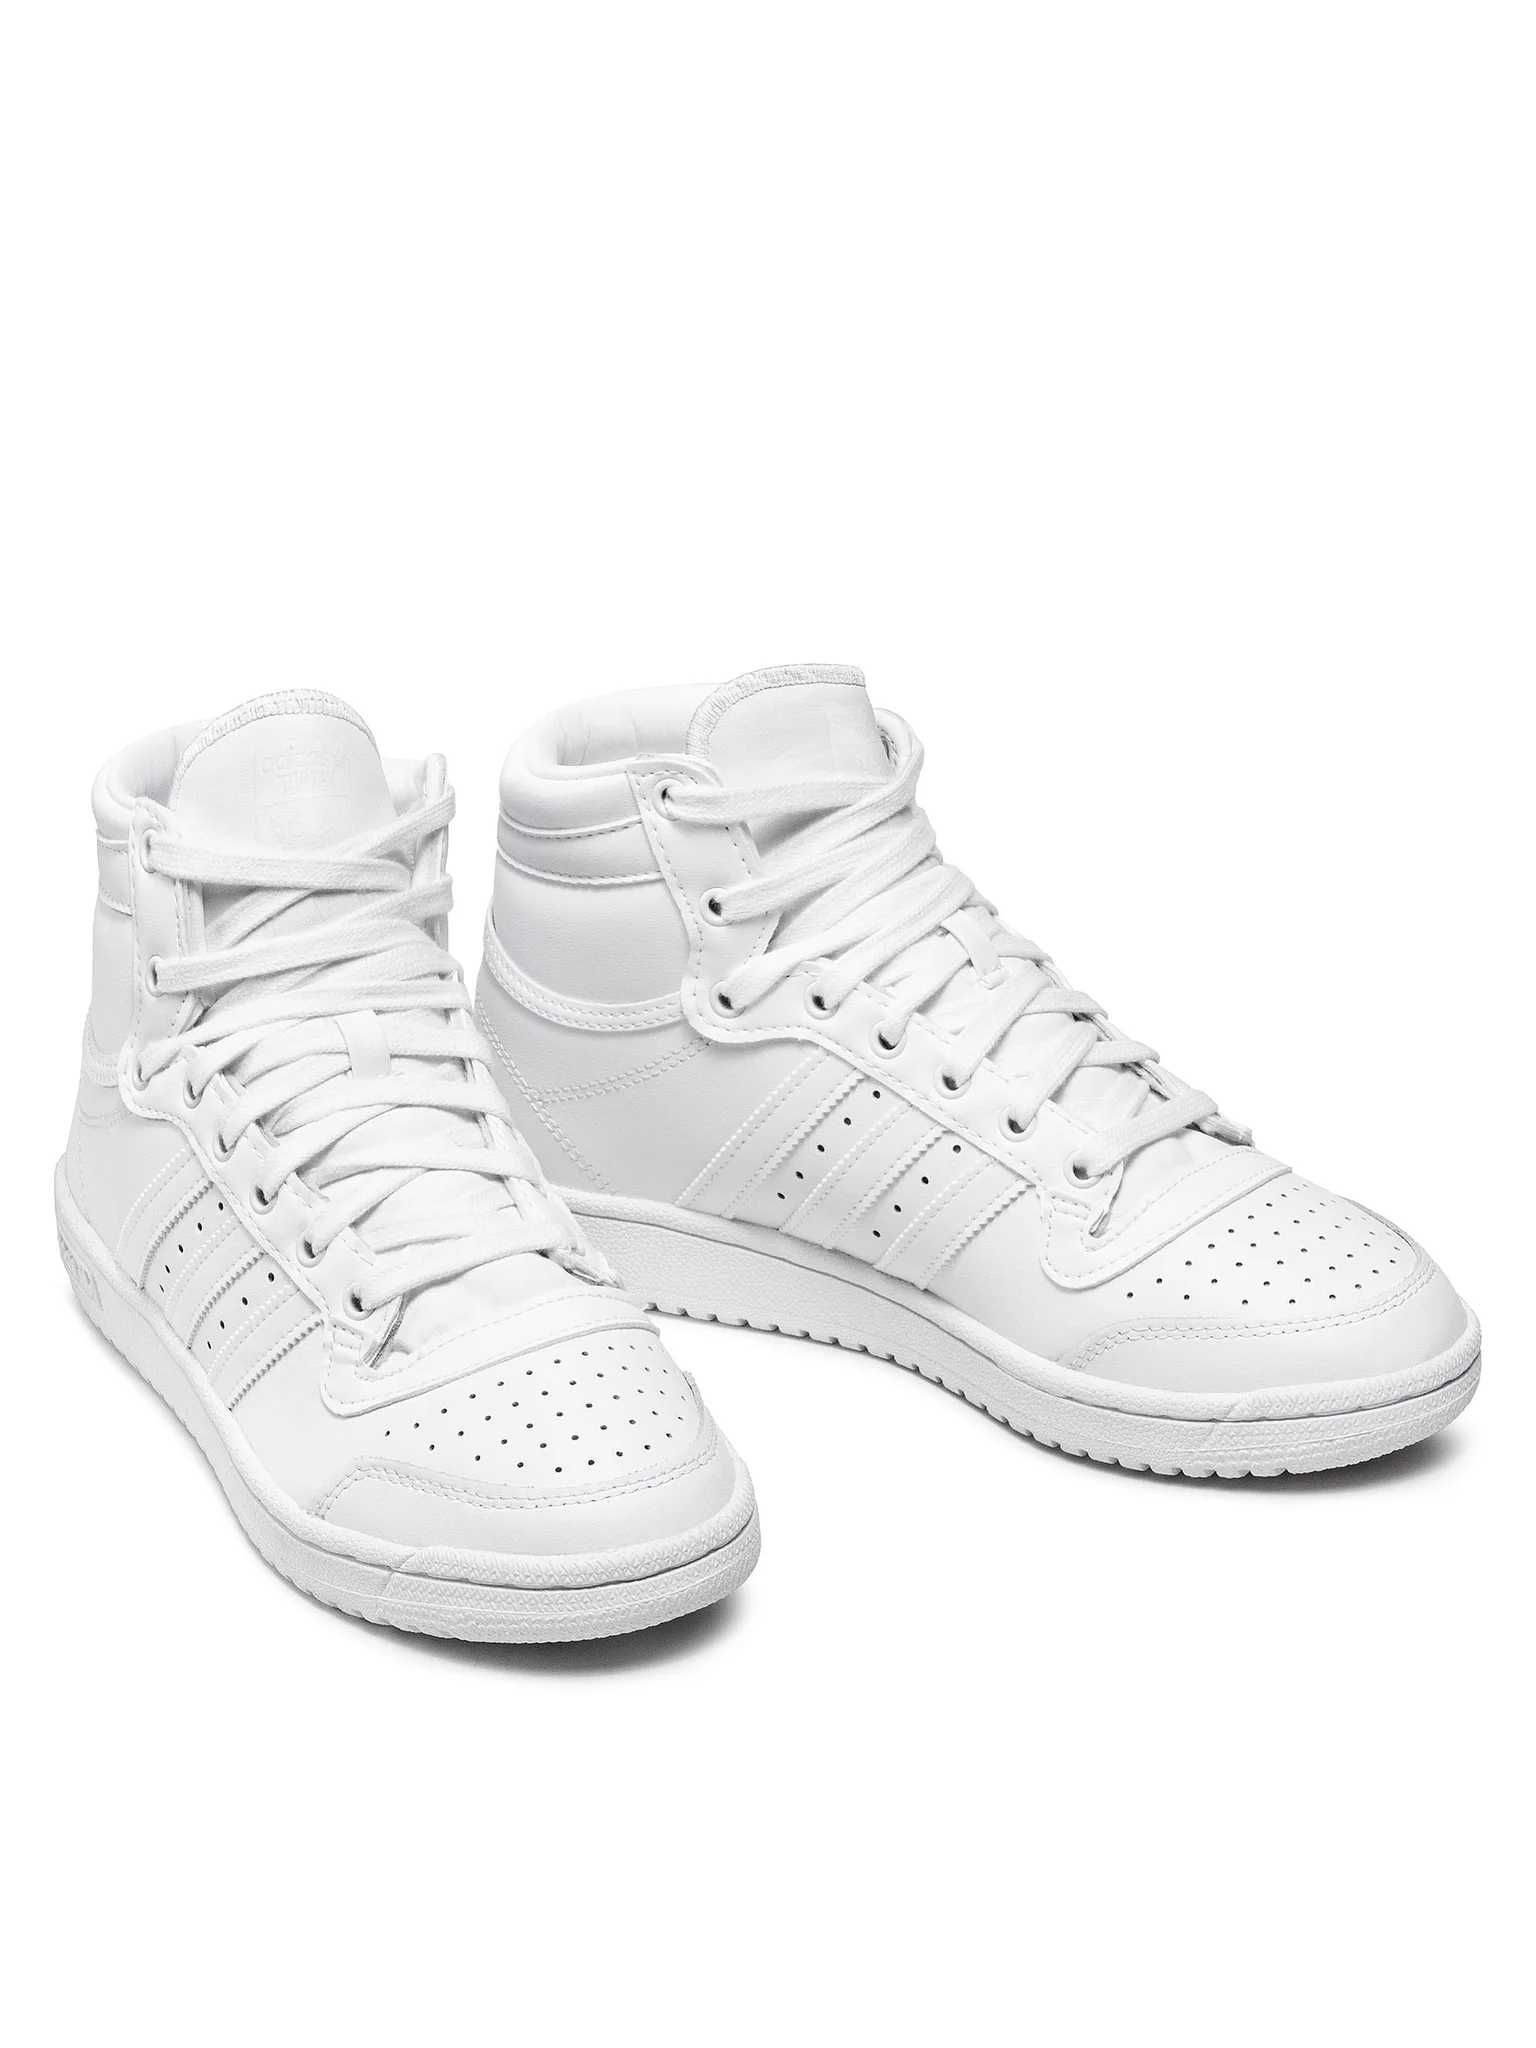 Adidas Top Ten Hi C sneakersy białe,  chłopięce rozmiar 29